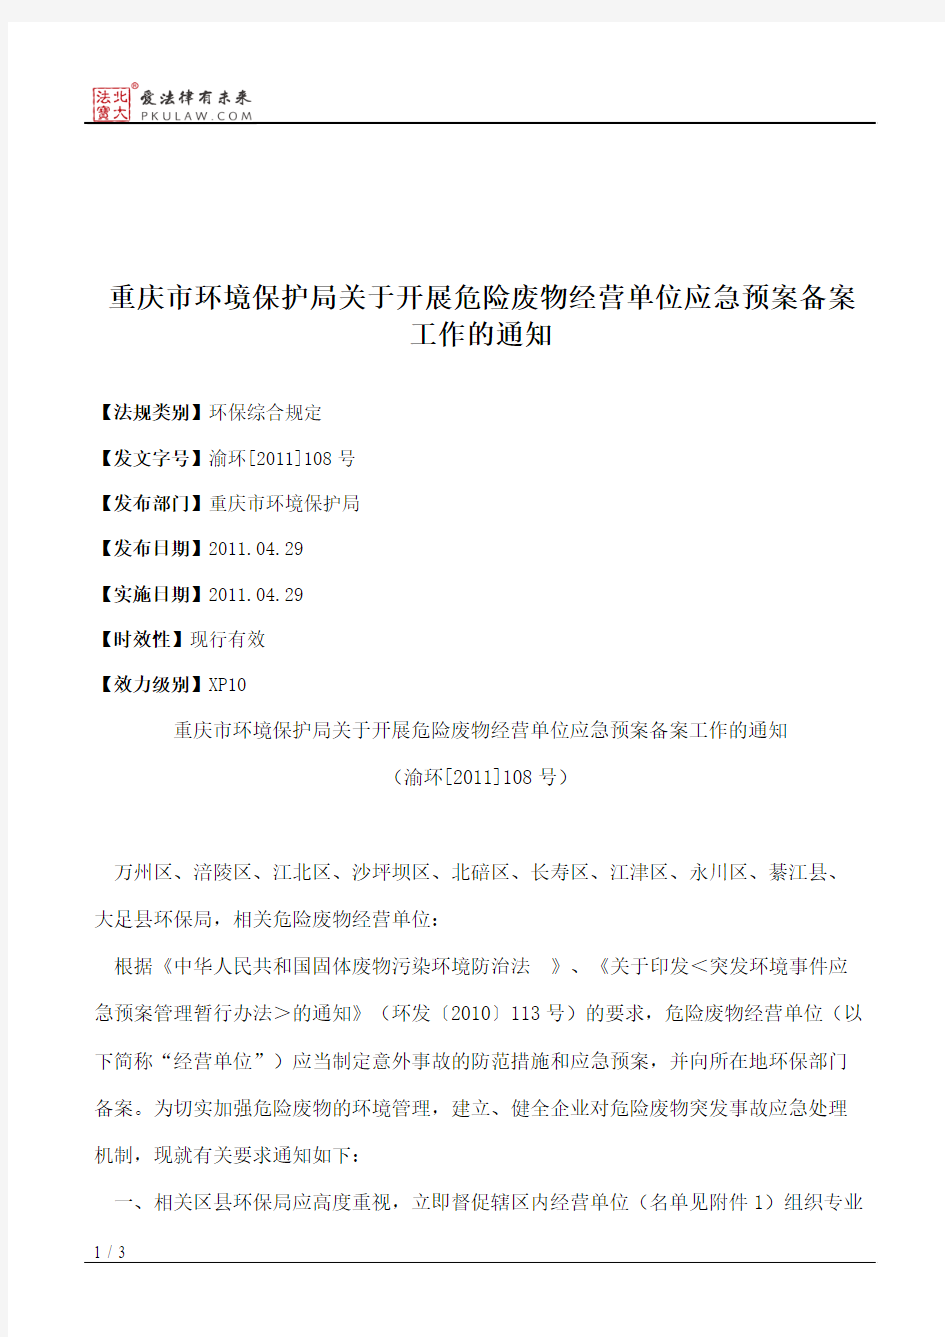 重庆市环境保护局关于开展危险废物经营单位应急预案备案工作的通知